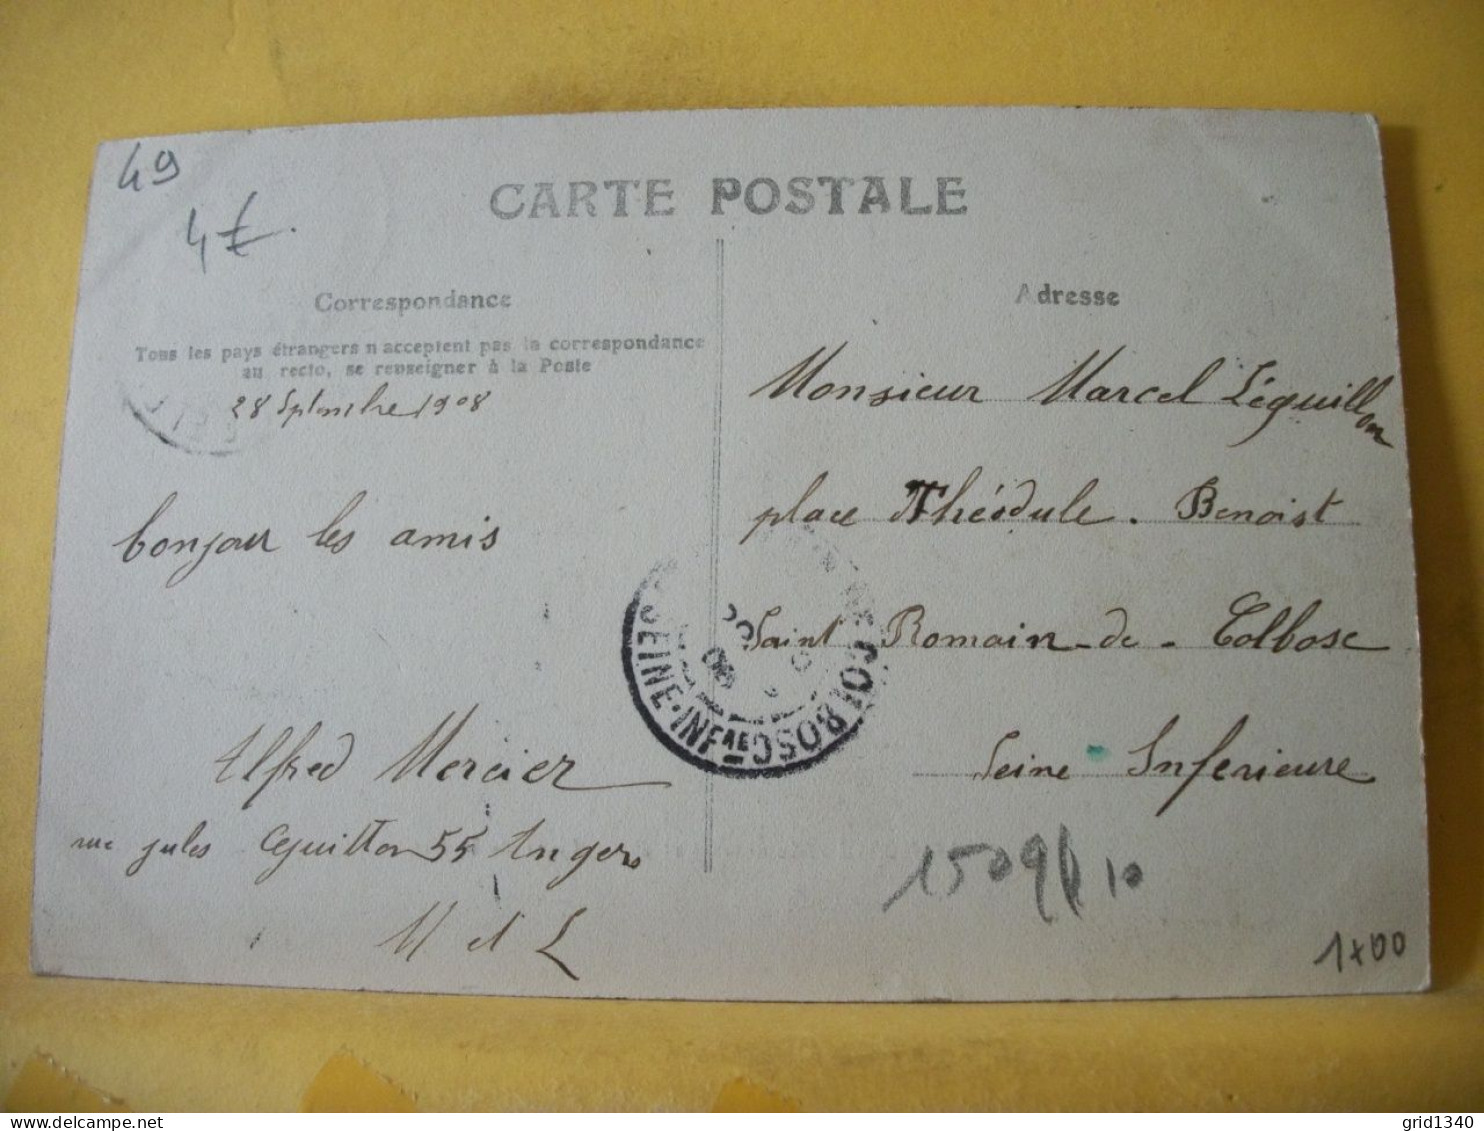 49 5770 CPA 1908 - 49 LONGUE - PLACE DE LA MAIRIE - ANIMATION - Other & Unclassified